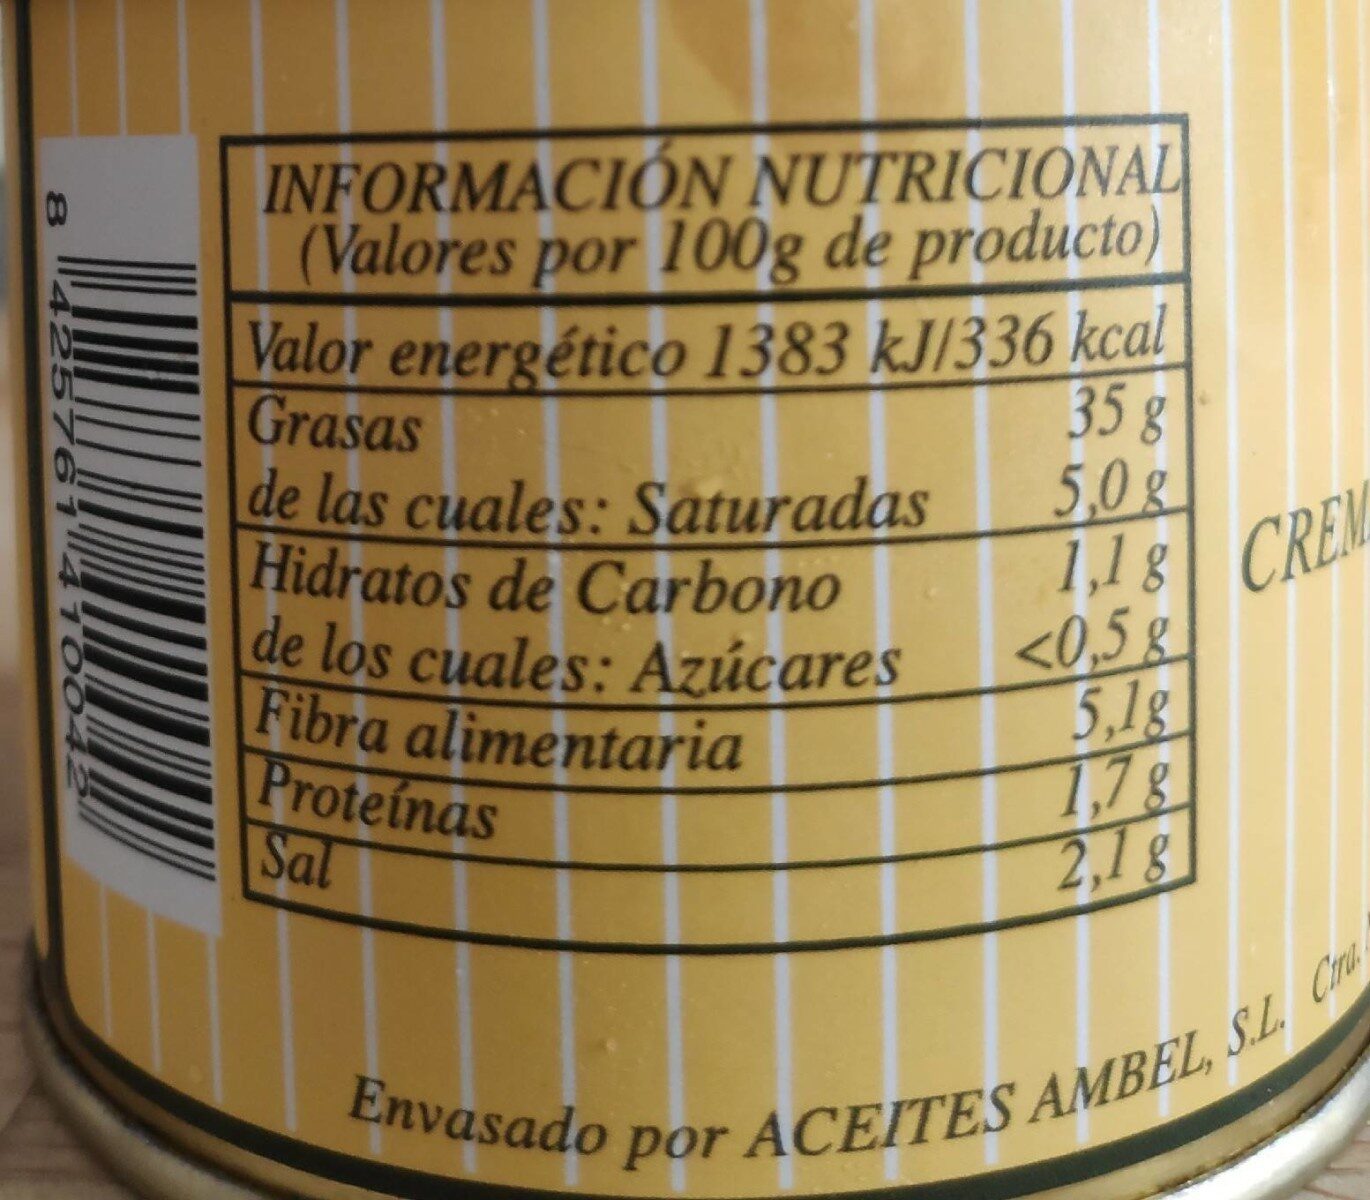 Crema de aceitunas - Informació nutricional - es